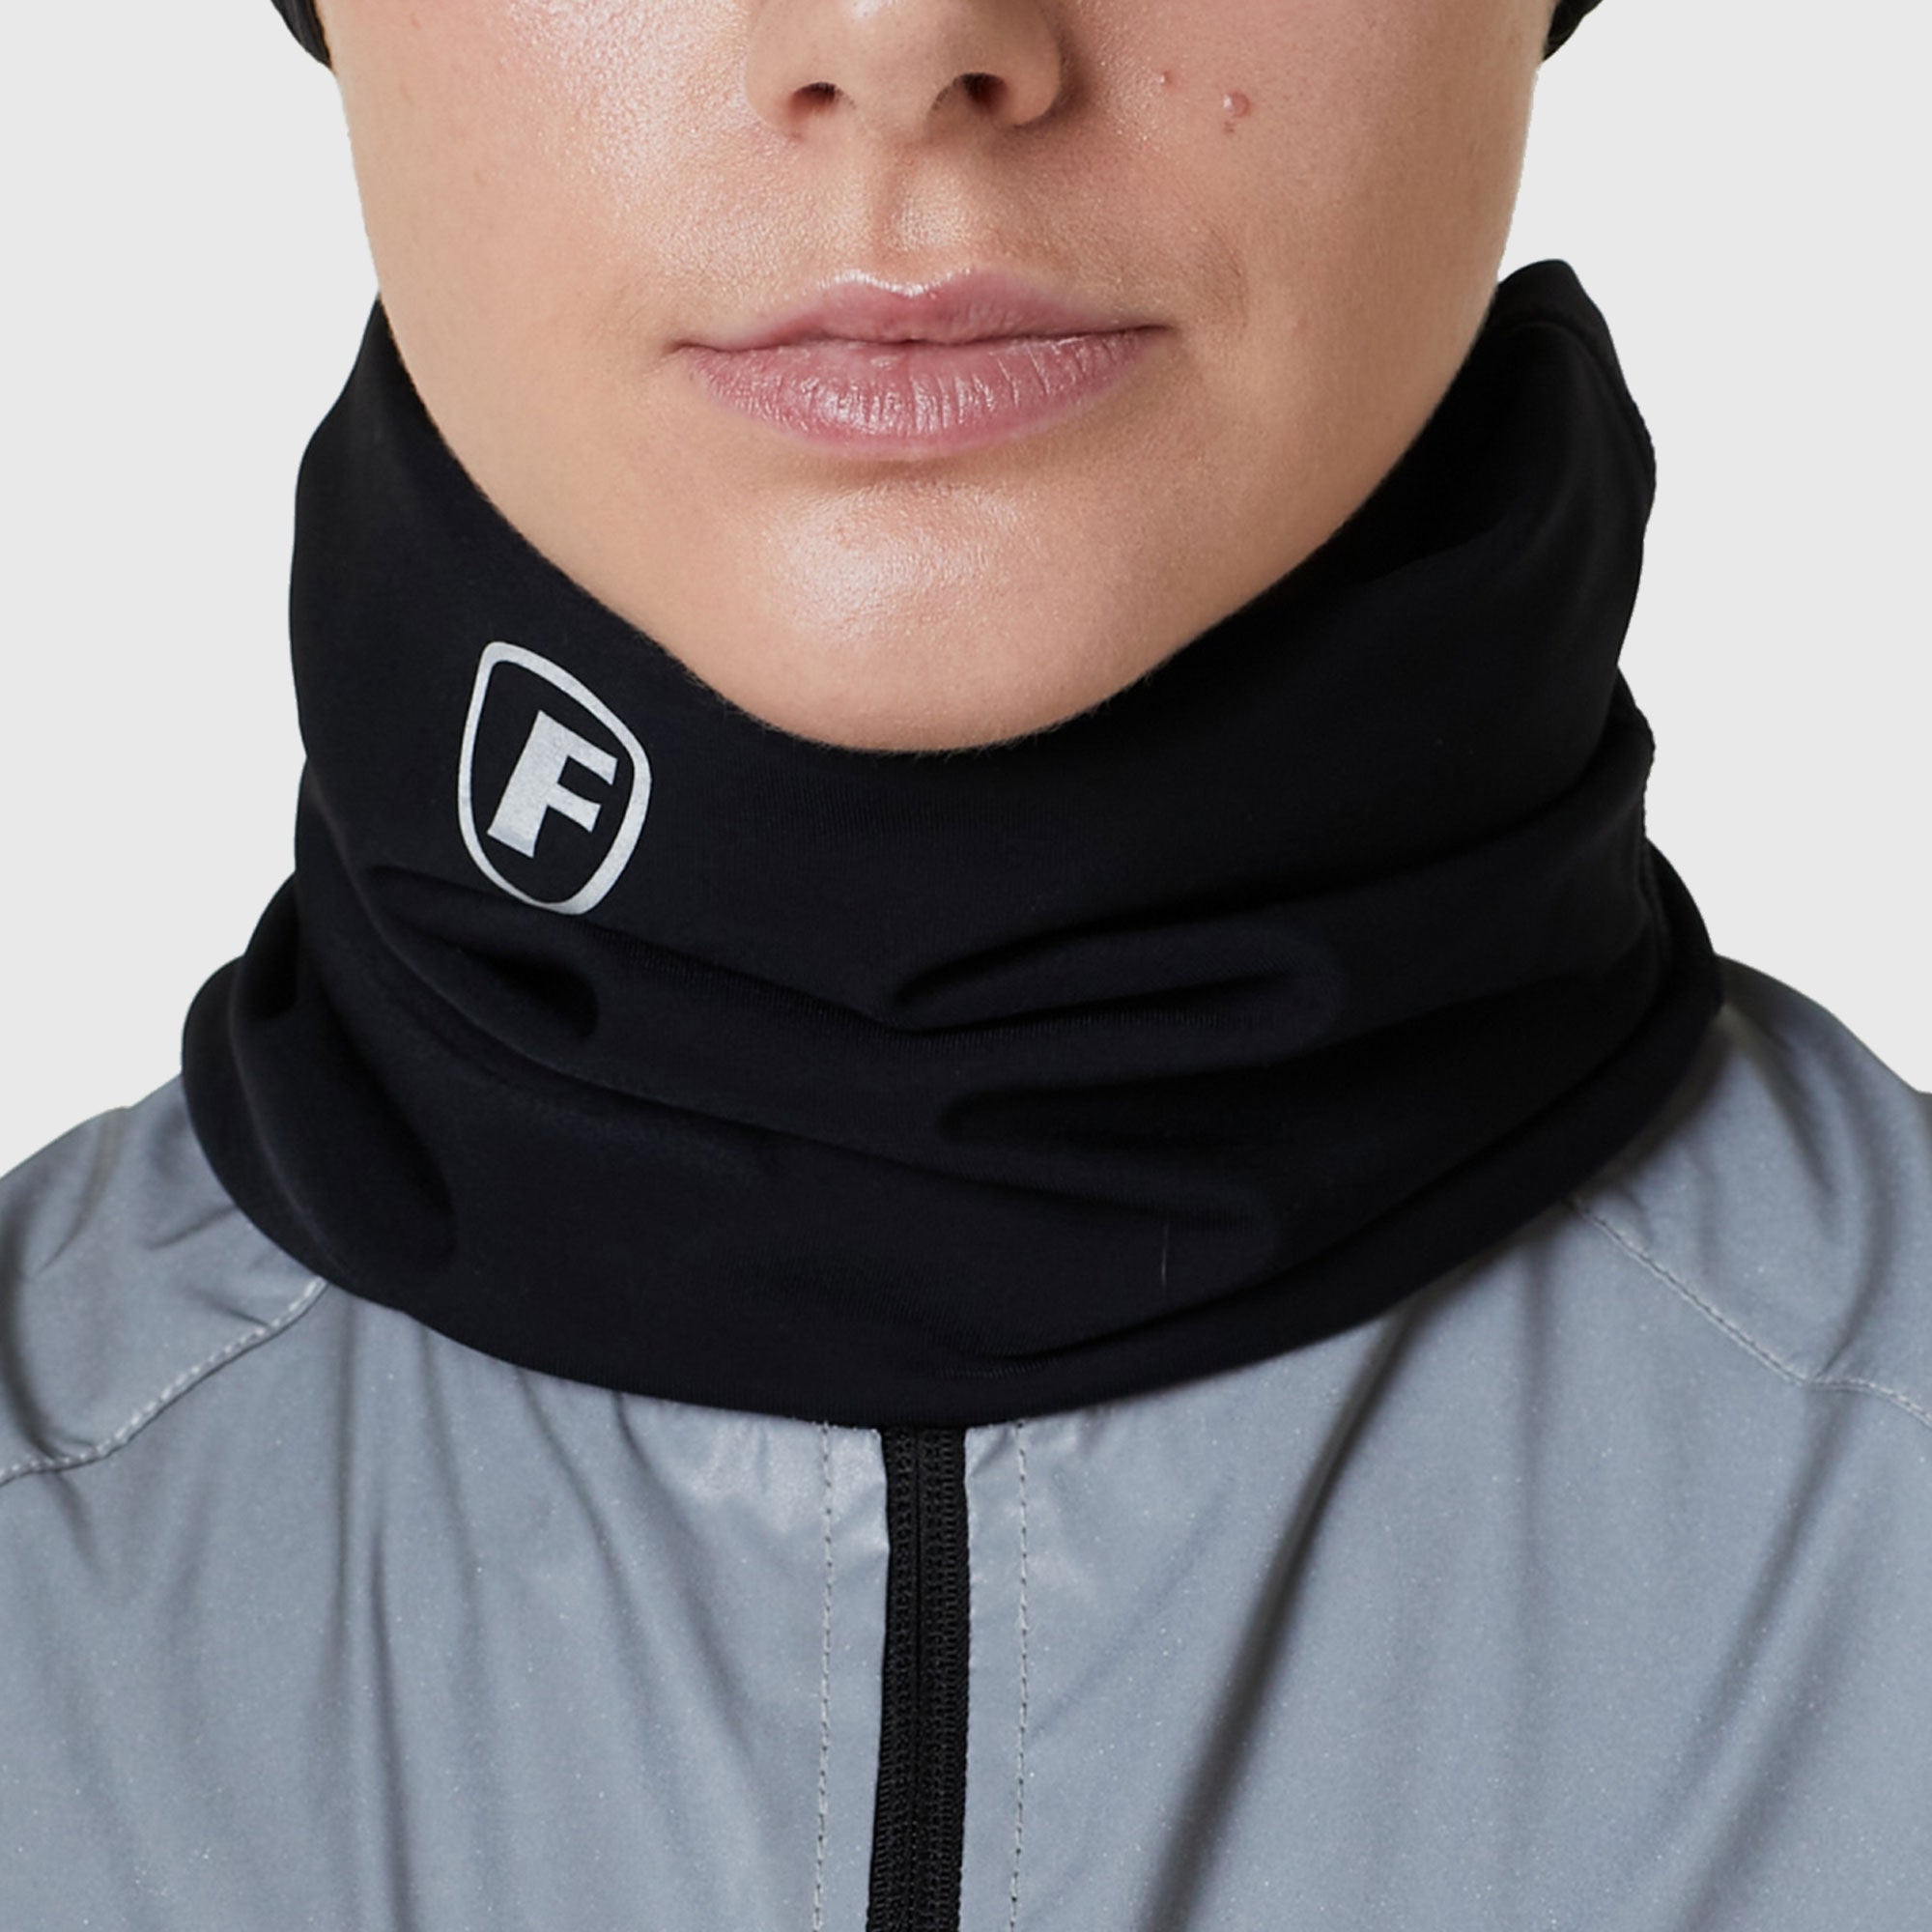 Fdx Black Unisex Neck Warmer Cycling Winter Thermal Fleece Unisex Headwear Face cover Winterproof Wind Stopper Buff Gaiters